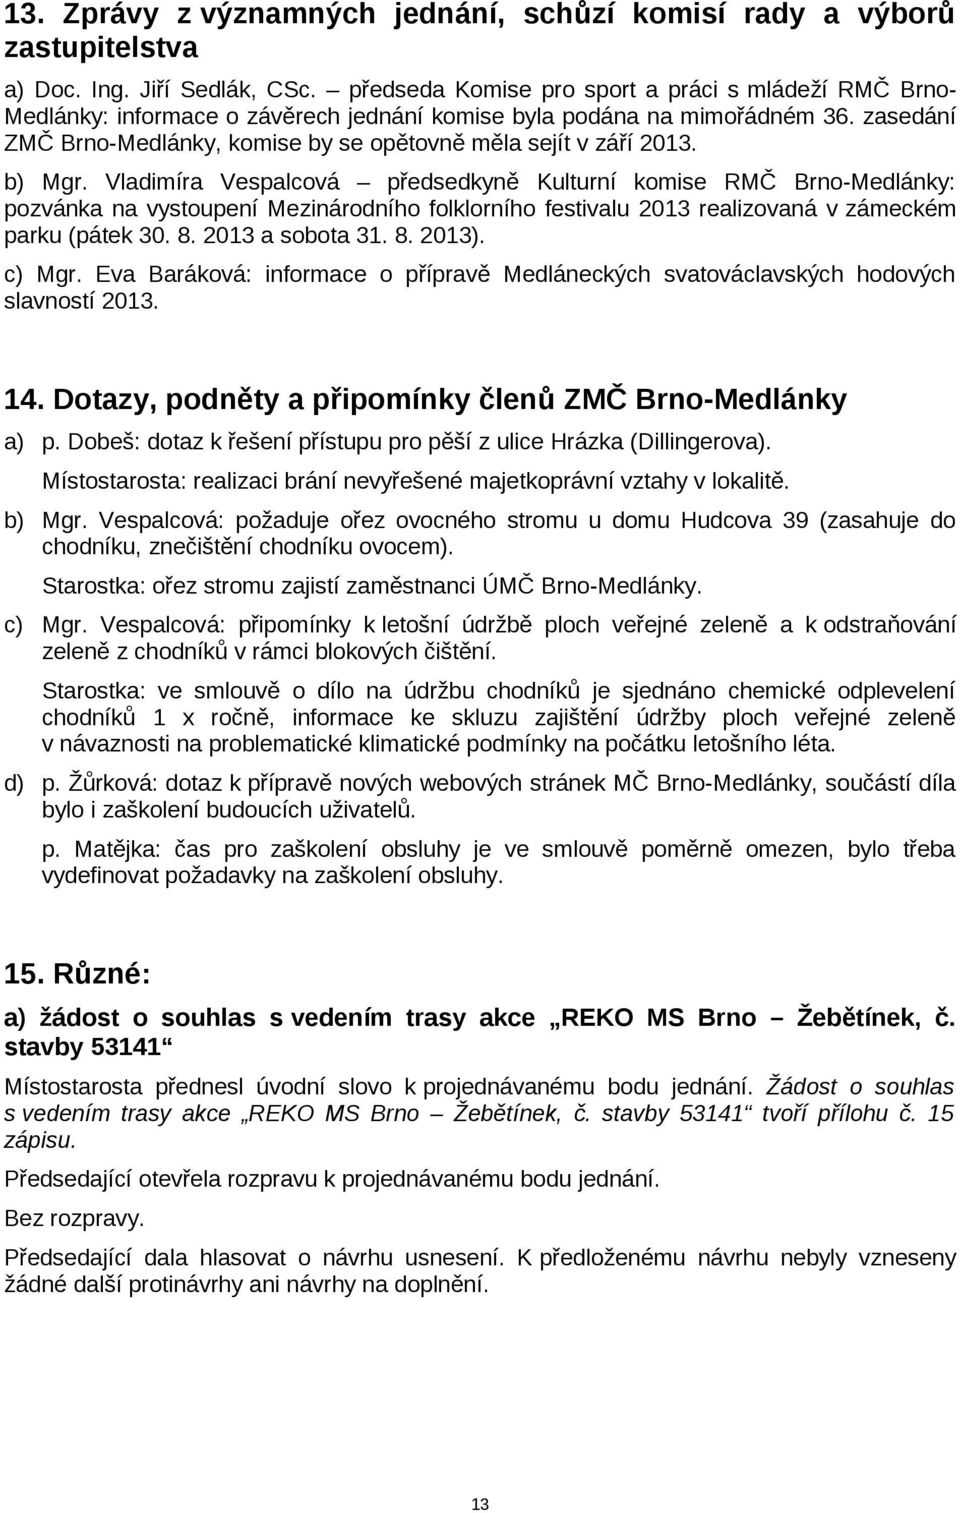 zasedání ZMČ Brno-Medlánky, komise by se opětovně měla sejít v září 2013. b) Mgr.